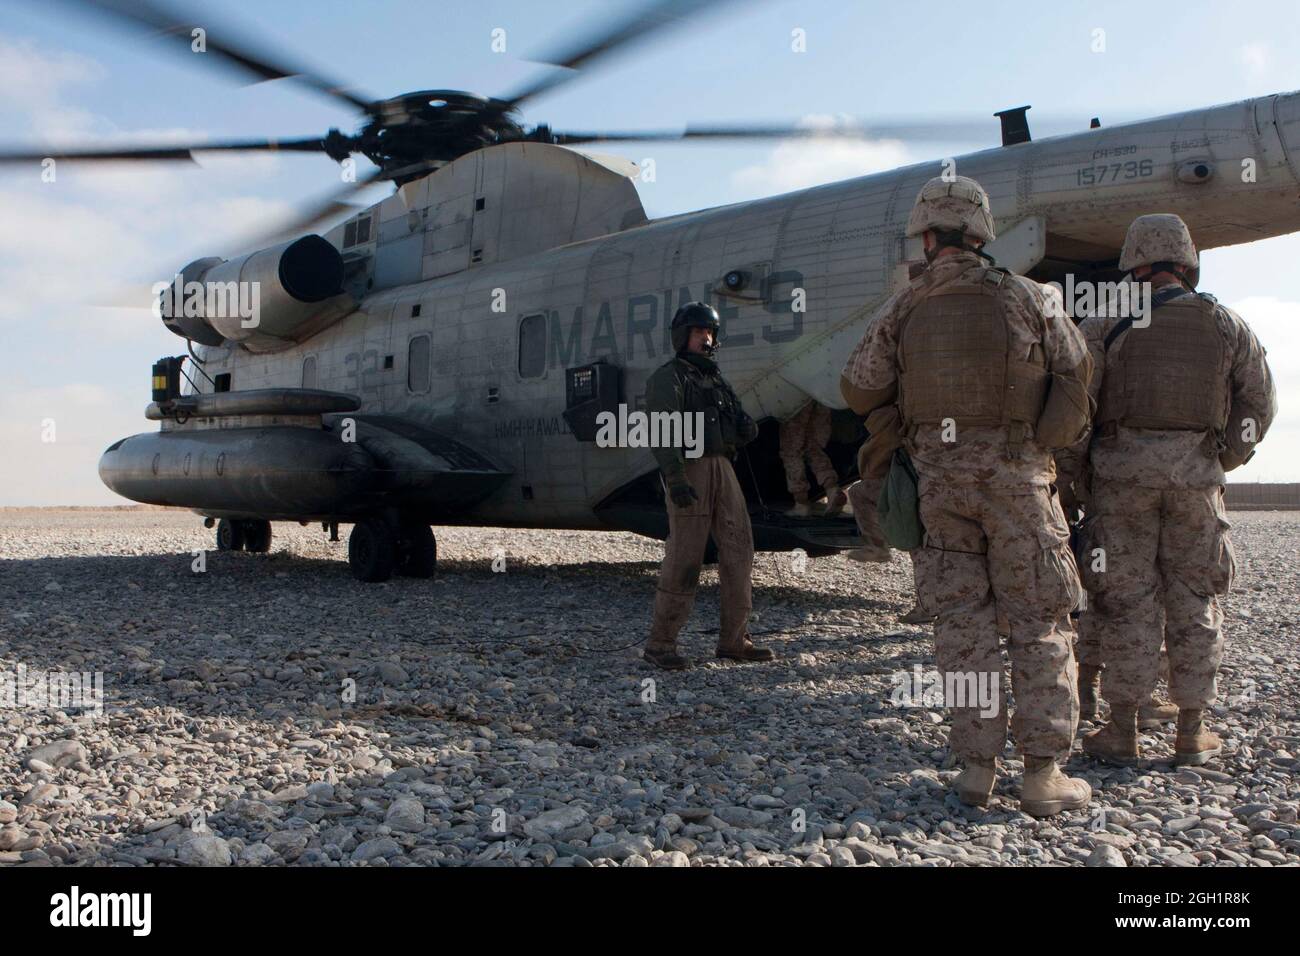 US Marines of 1st Radio Batallón, 2D Fuerza Expedicionaria Marina (adelante), carga en un helicóptero de estallones marinos CH-53D del Escuadrón de Helicópteros Pesados Marinos 363 durante una operación de vuelo de rutina, Forward Operating Base Edimburgo, provincia de Helmand, Afganistán, 5 de enero de 2012. La HMH-363 realizó operaciones de vuelo en apoyo de tropas en toda la provincia de Helmand. Foto de stock